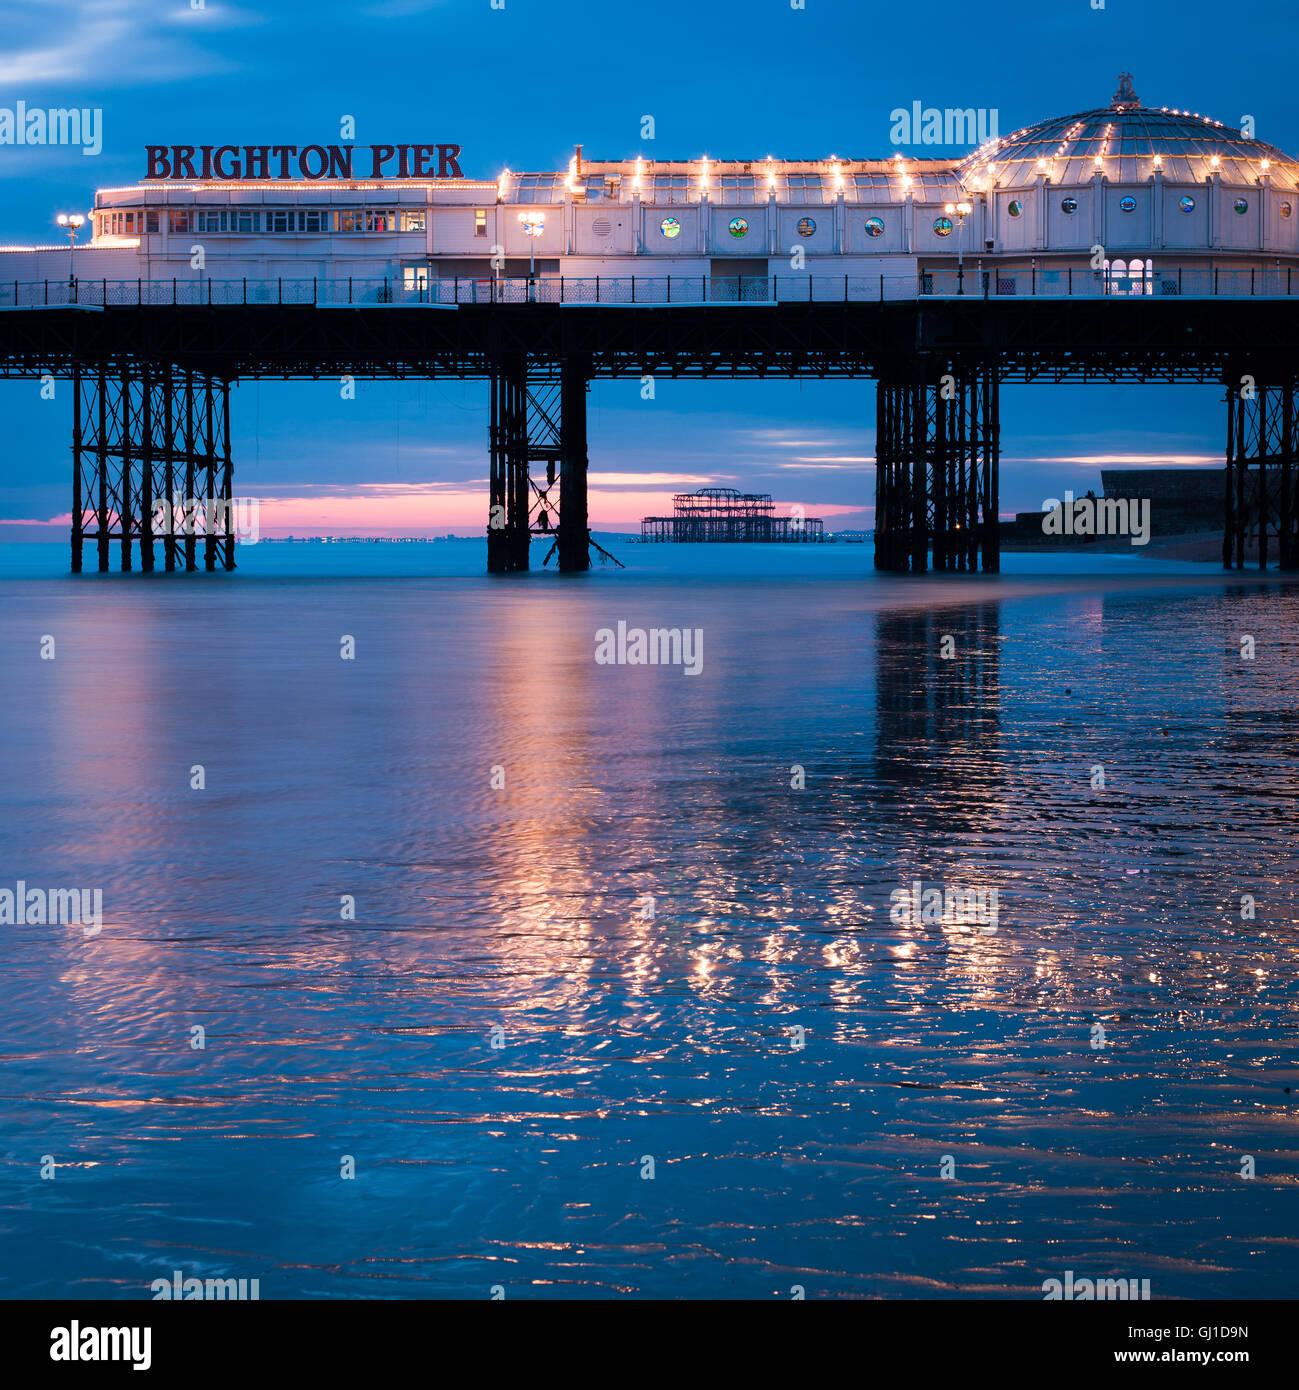 Il Brighton Pier al tramonto si riflette nella sabbia bagnata della bassa marea. In lontananza il vecchio molo Ovest può essere visto. Foto Stock